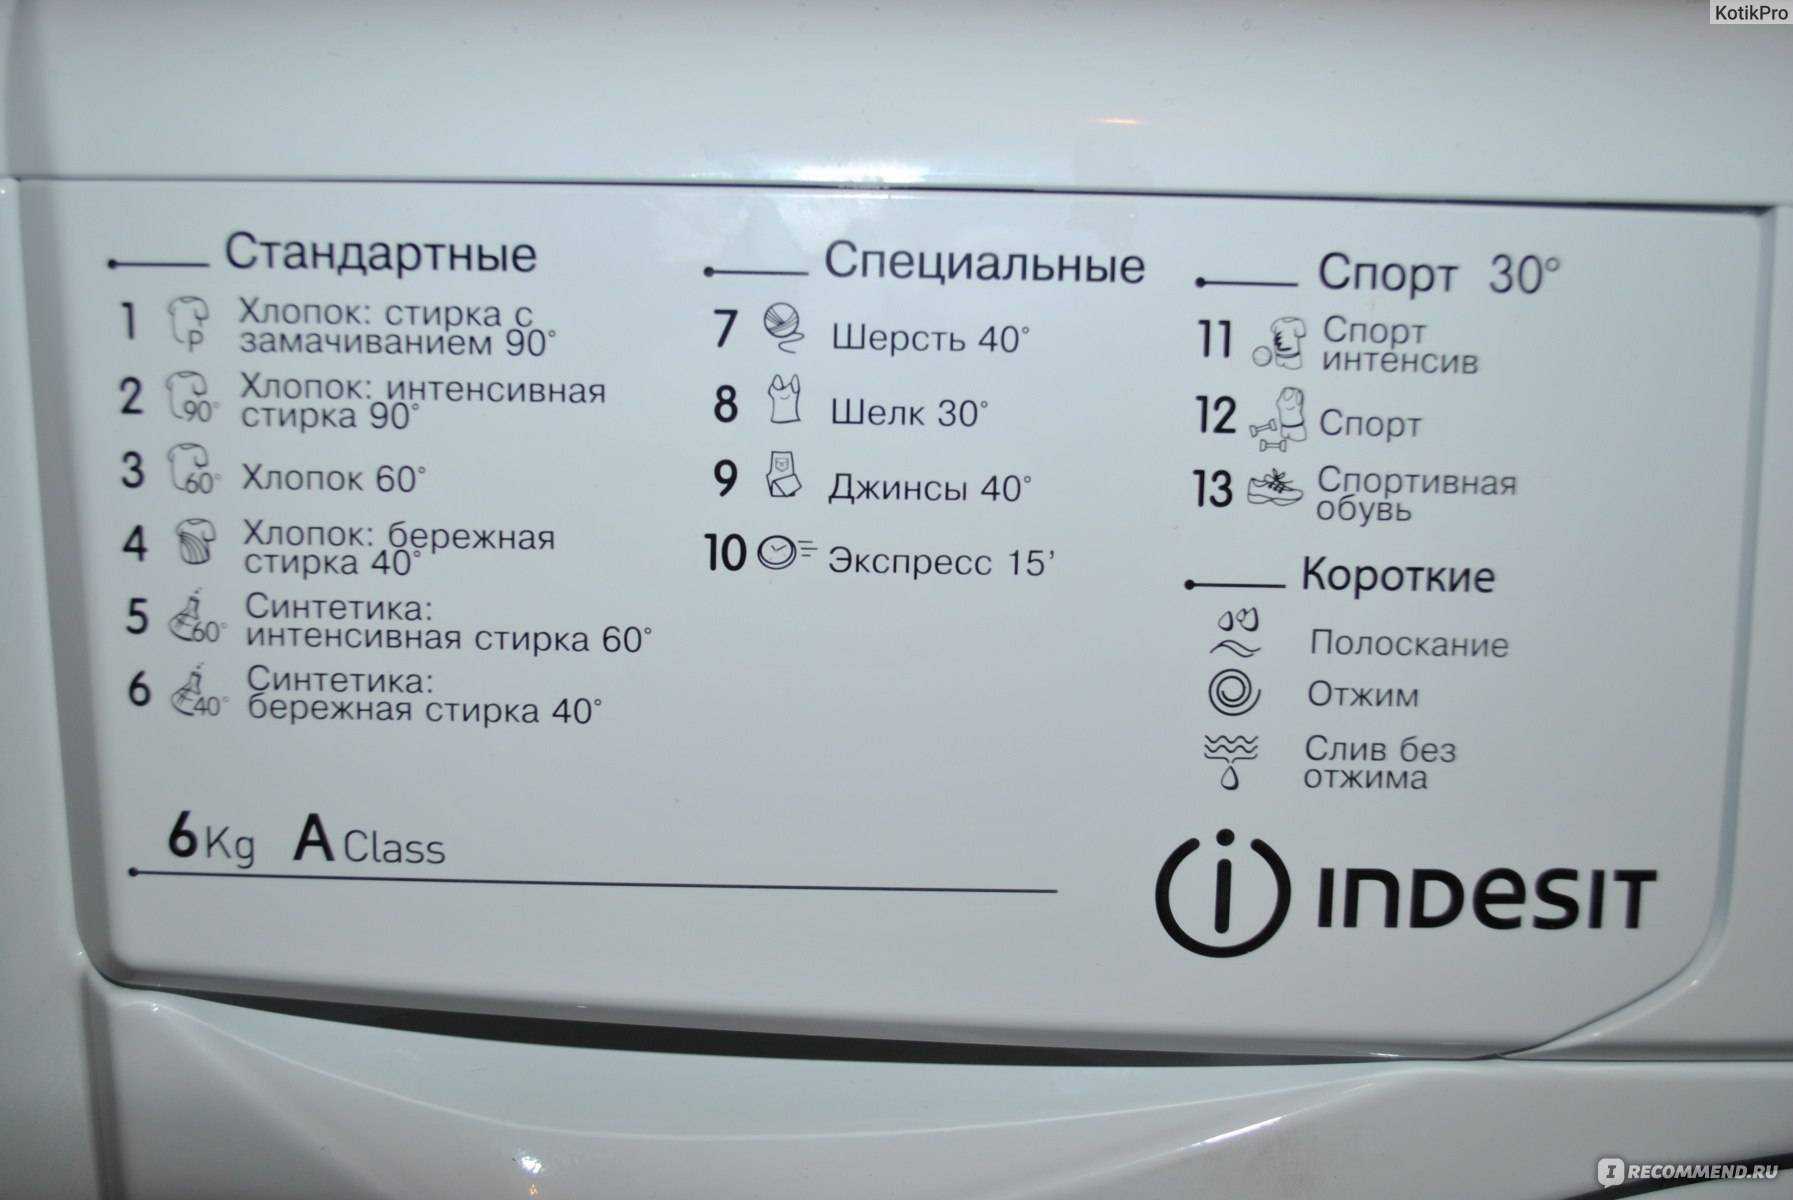 Сколько стирает машинка автомат на режиме хлопок